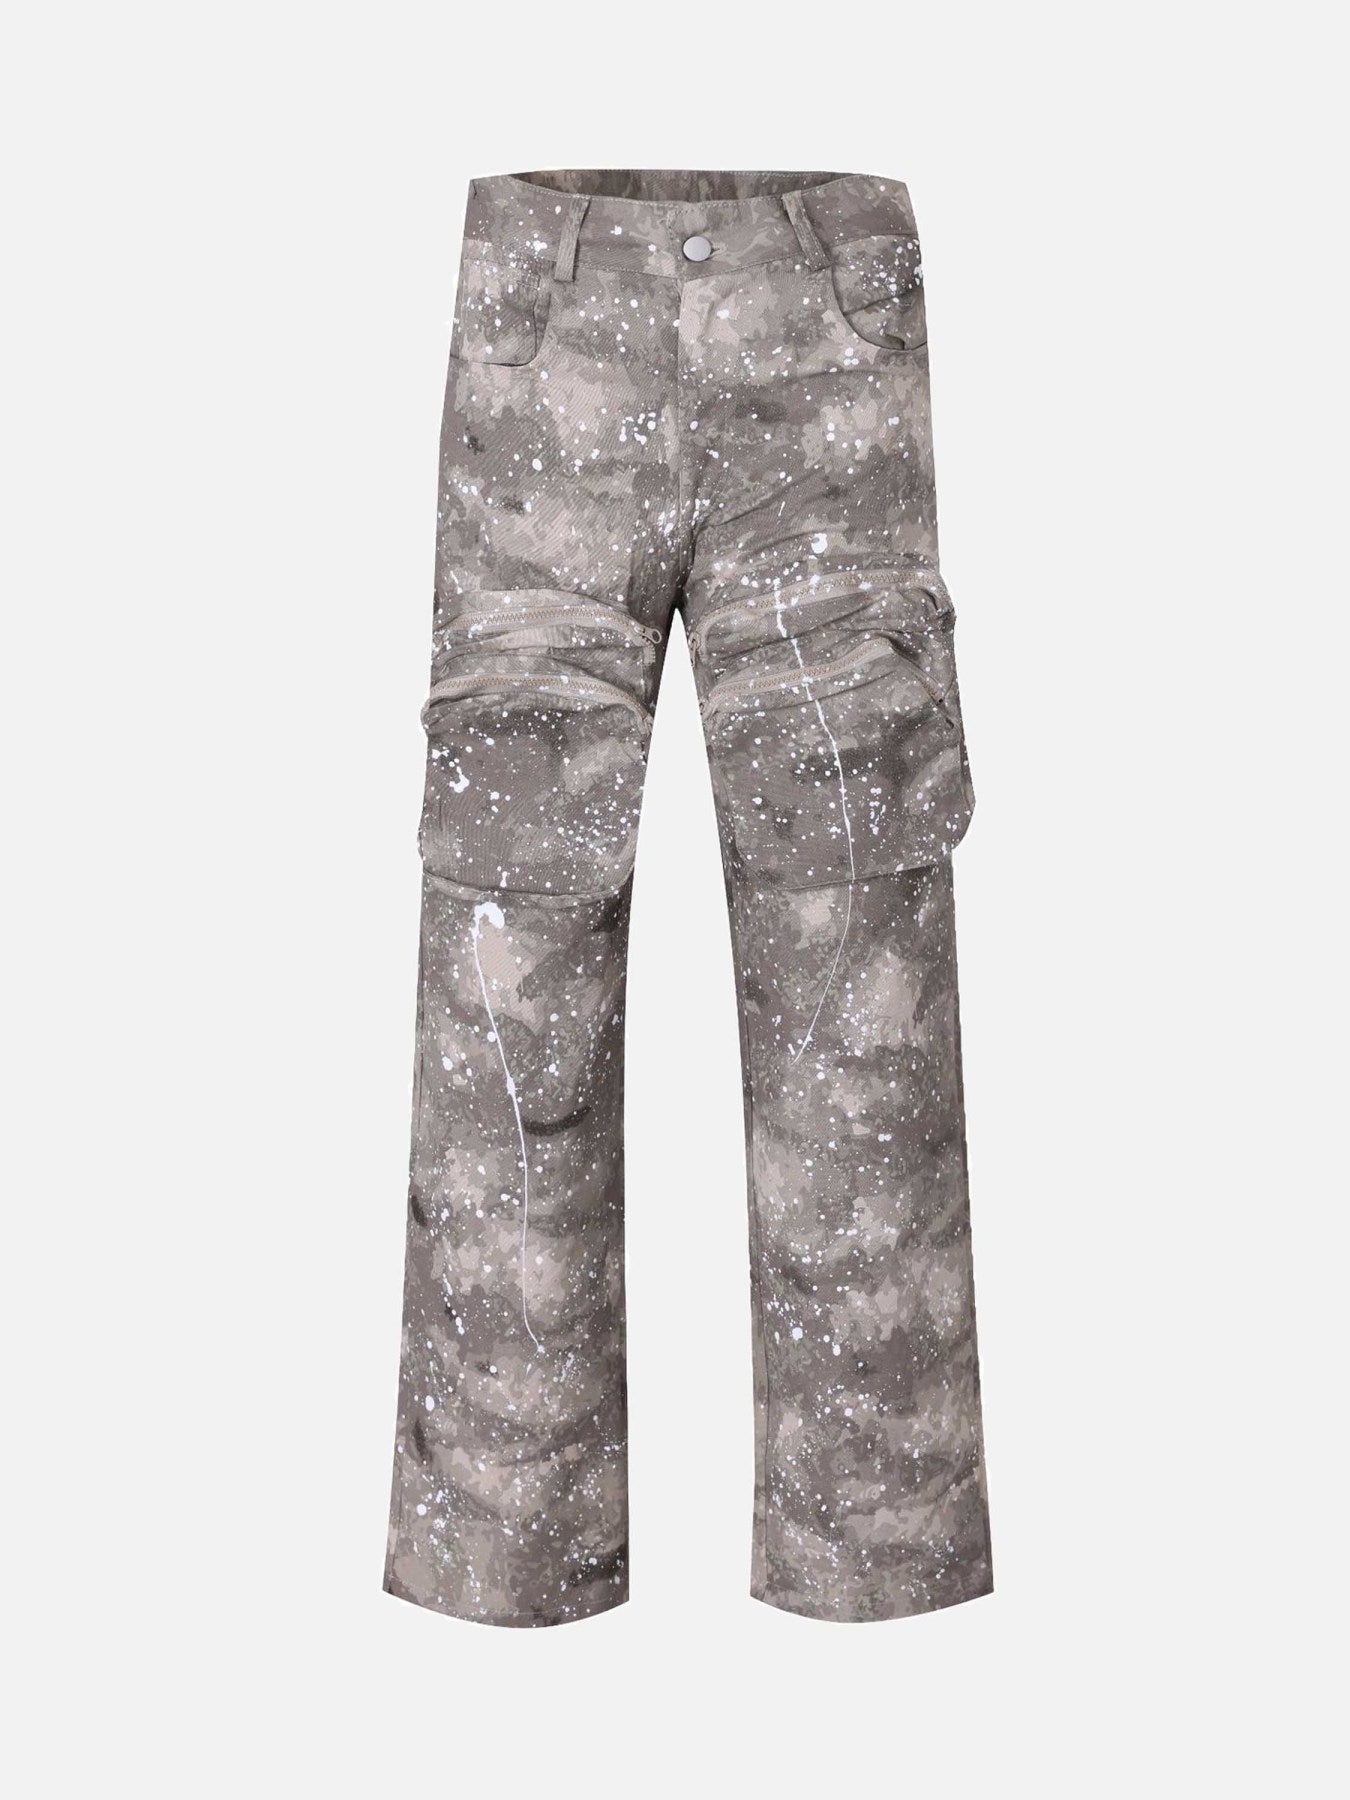 Sneakerland Large Pocket Camouflage Denim Pants SP230524GENA